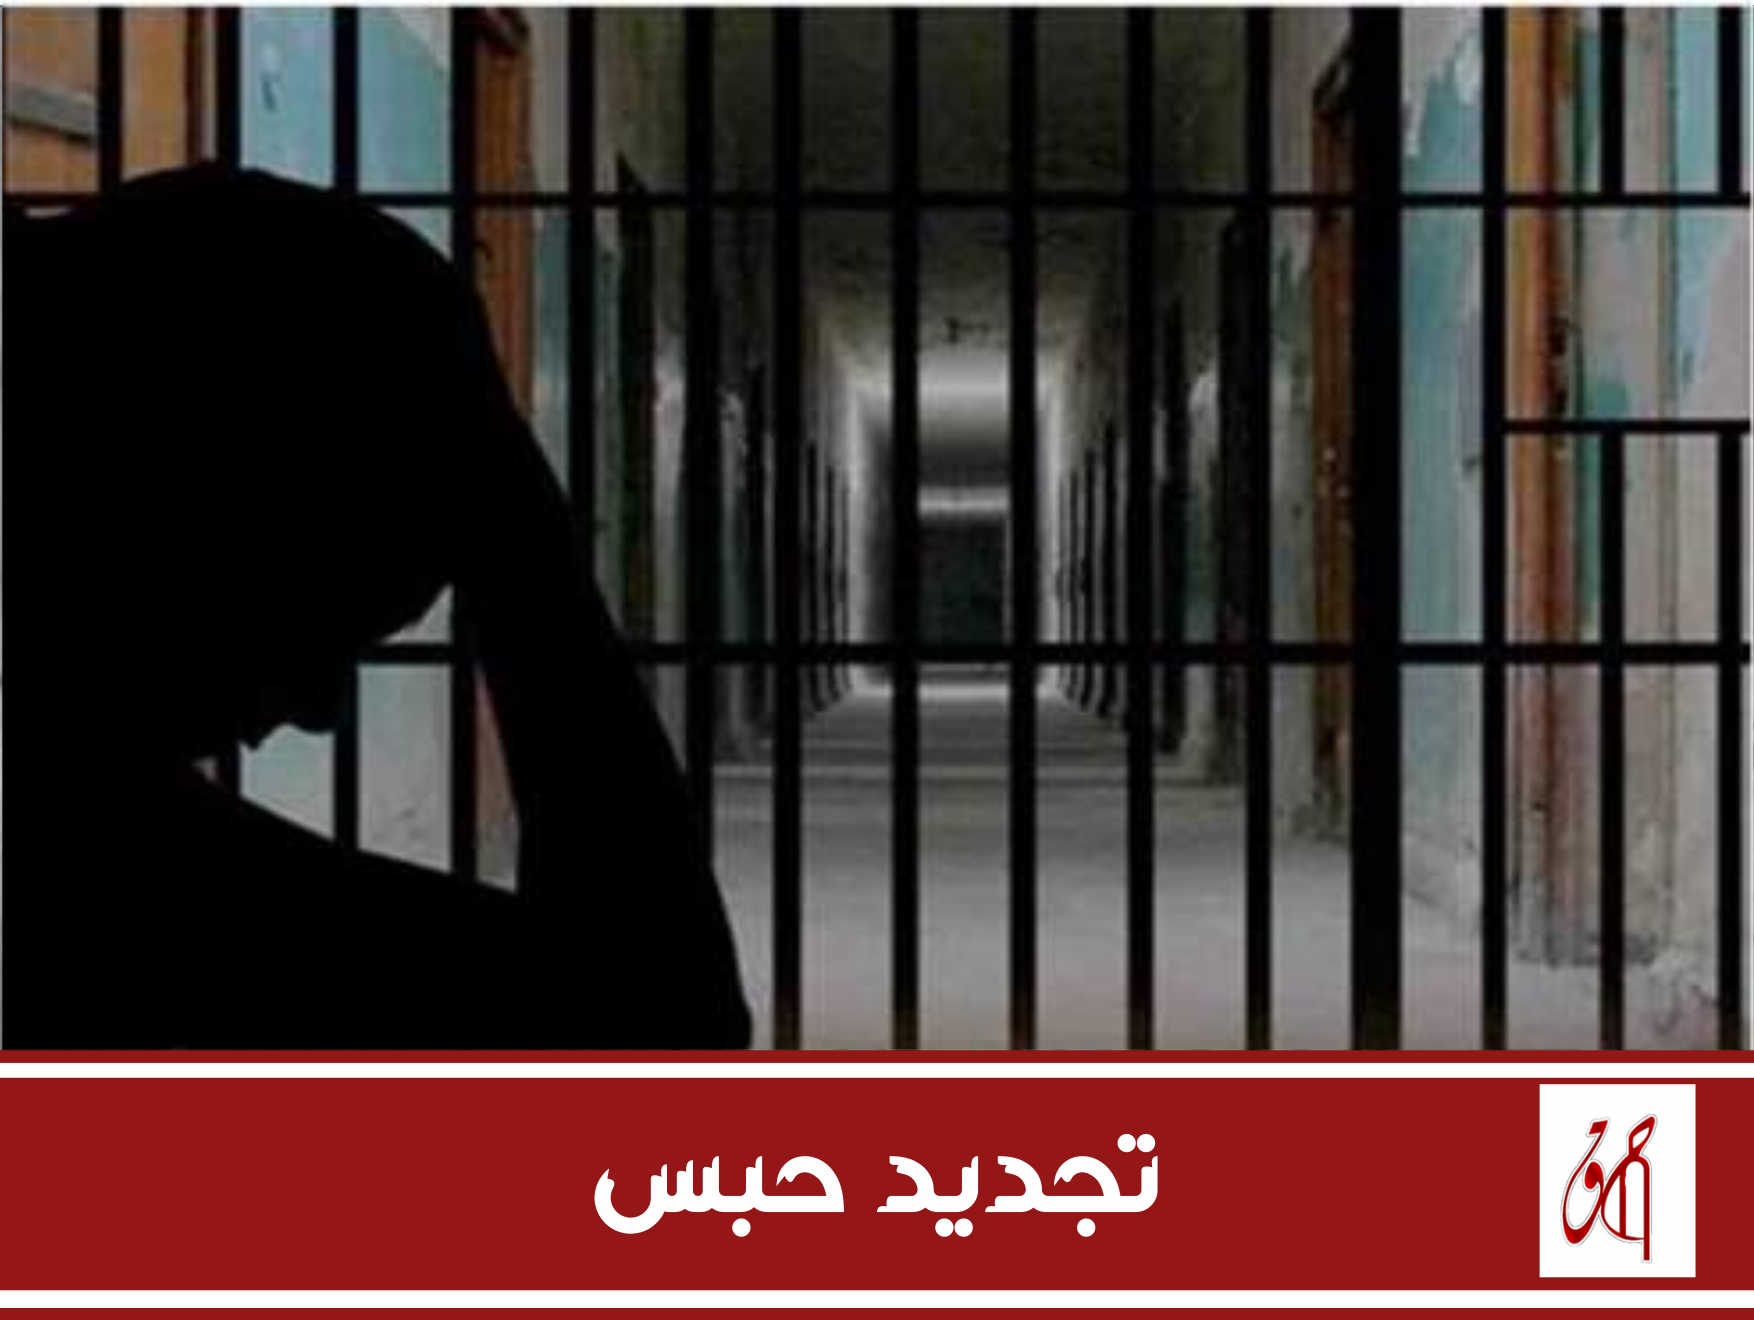 تجديد حبس وليد احمد شوقي 45 يوما في القضية 880 لسنة 2020.